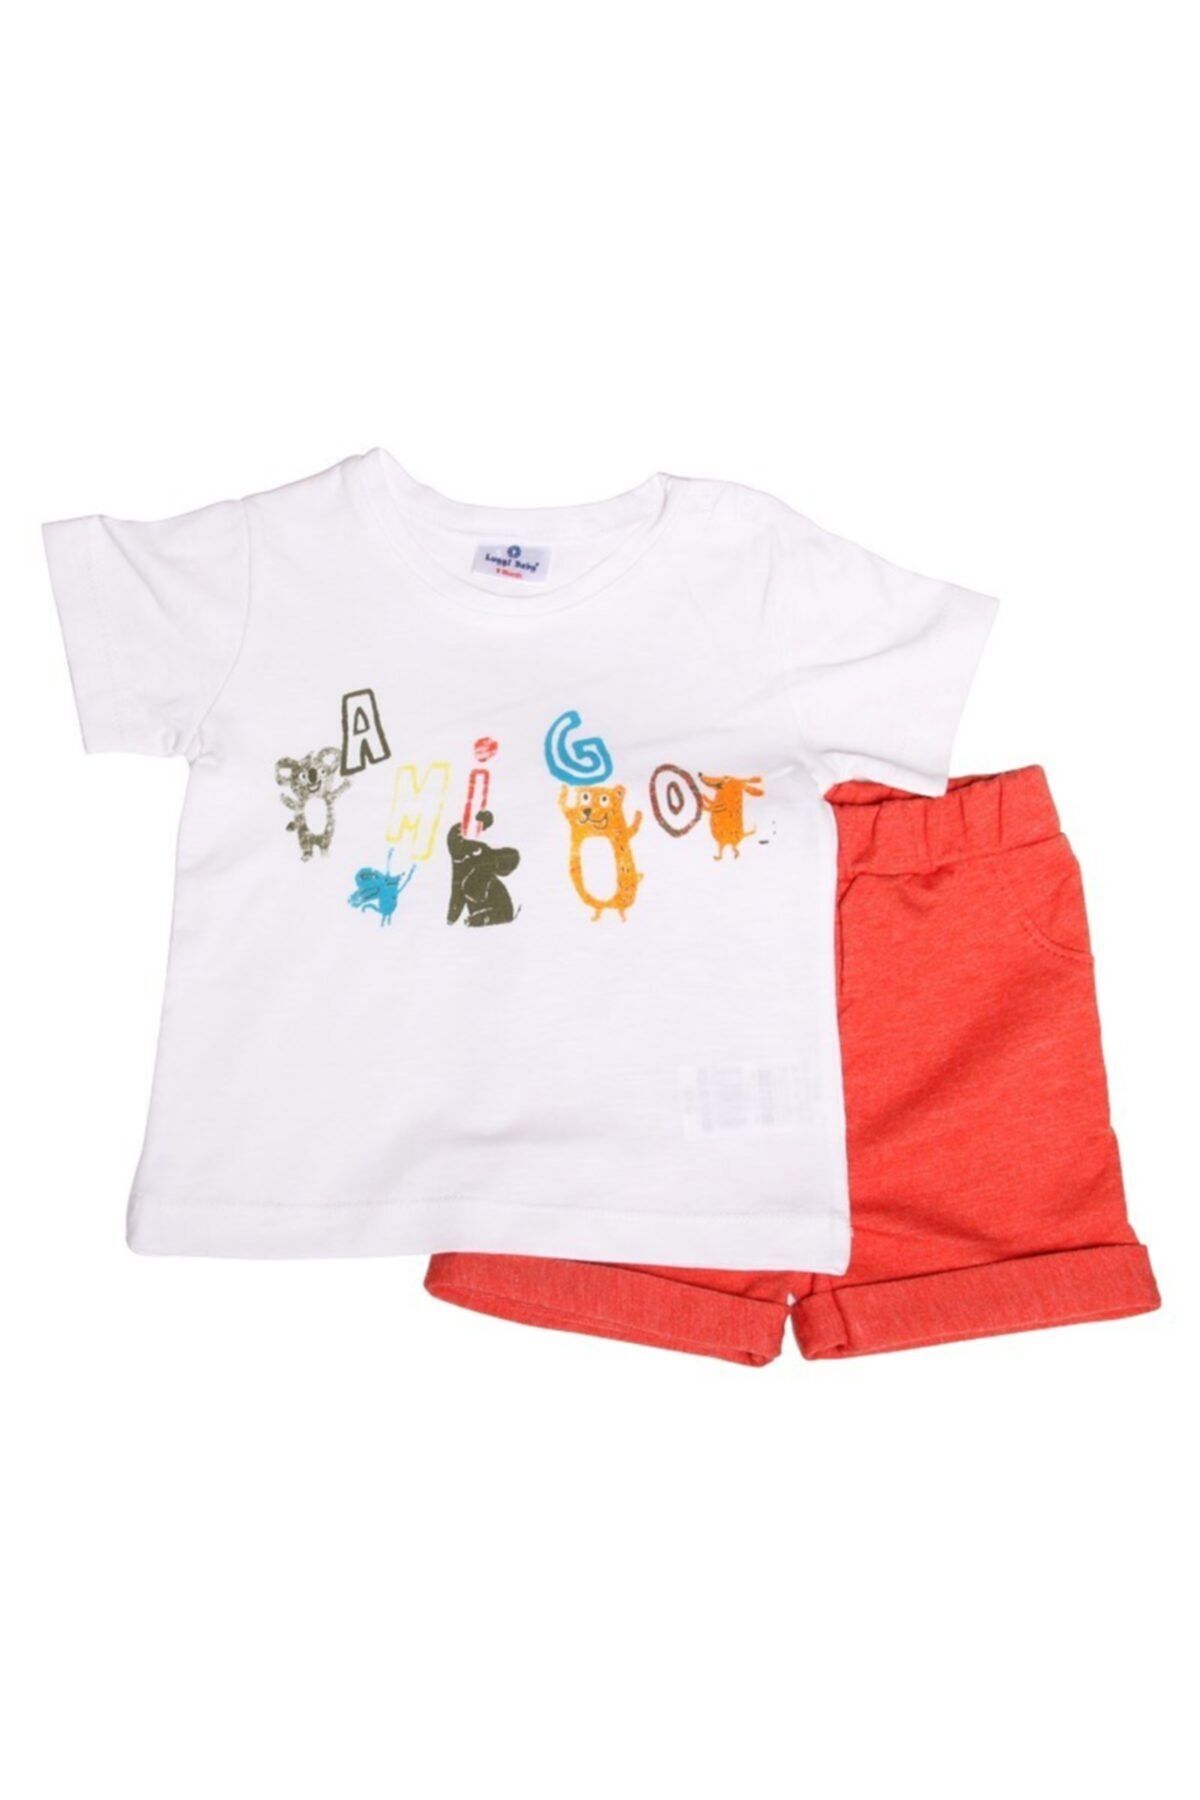 Luggi Baby Erkek 'amigo' Beyaz T-shirt & Kırmızı Şort Takım Lgb-5120-4